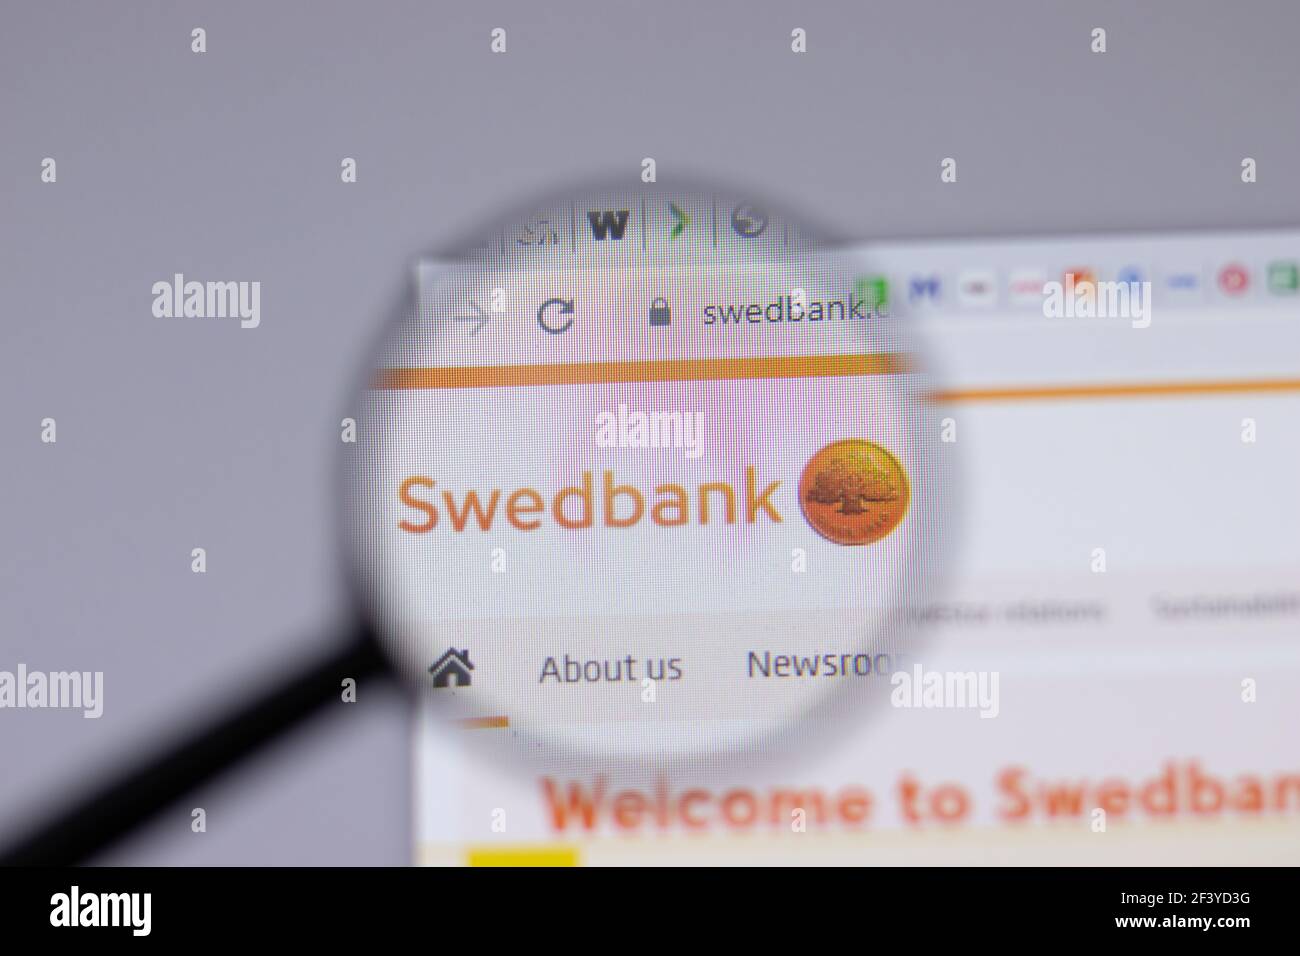 New York, USA - 18 Marzo 2021: Icona del logo della società Swedbank sul sito, Editoriale illustrativo Foto Stock